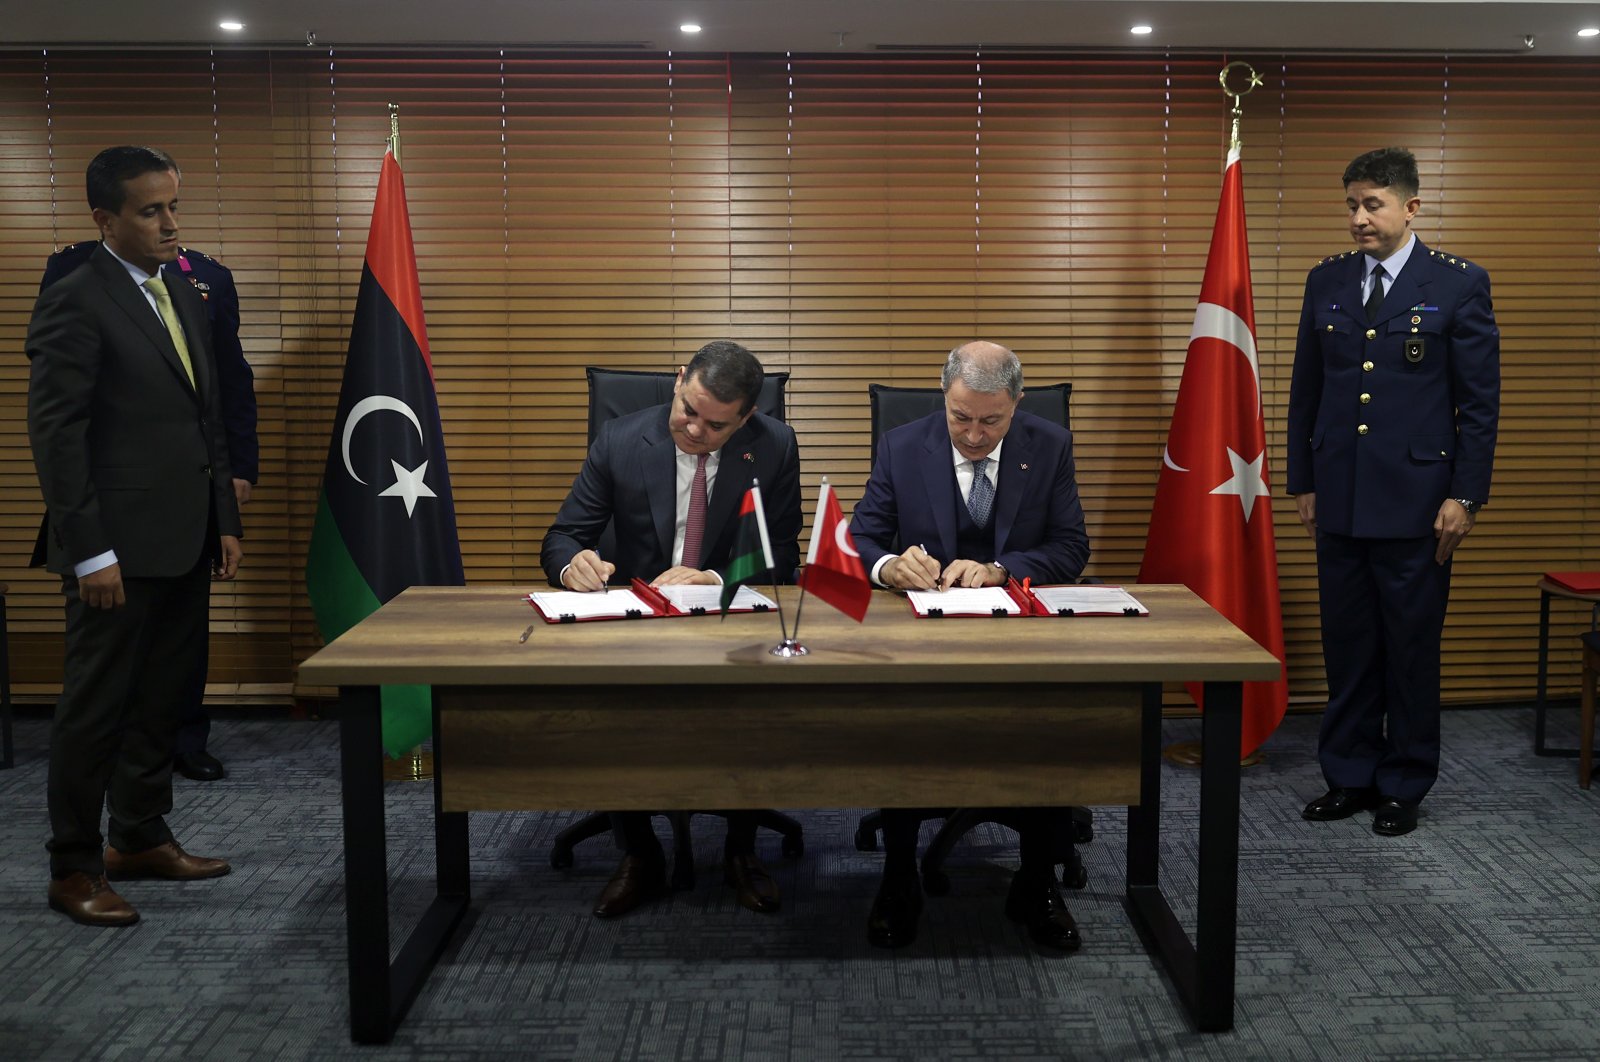 Türkiye, Libya menandatangani 2 kesepakatan lagi untuk kerja sama pertahanan yang lebih erat